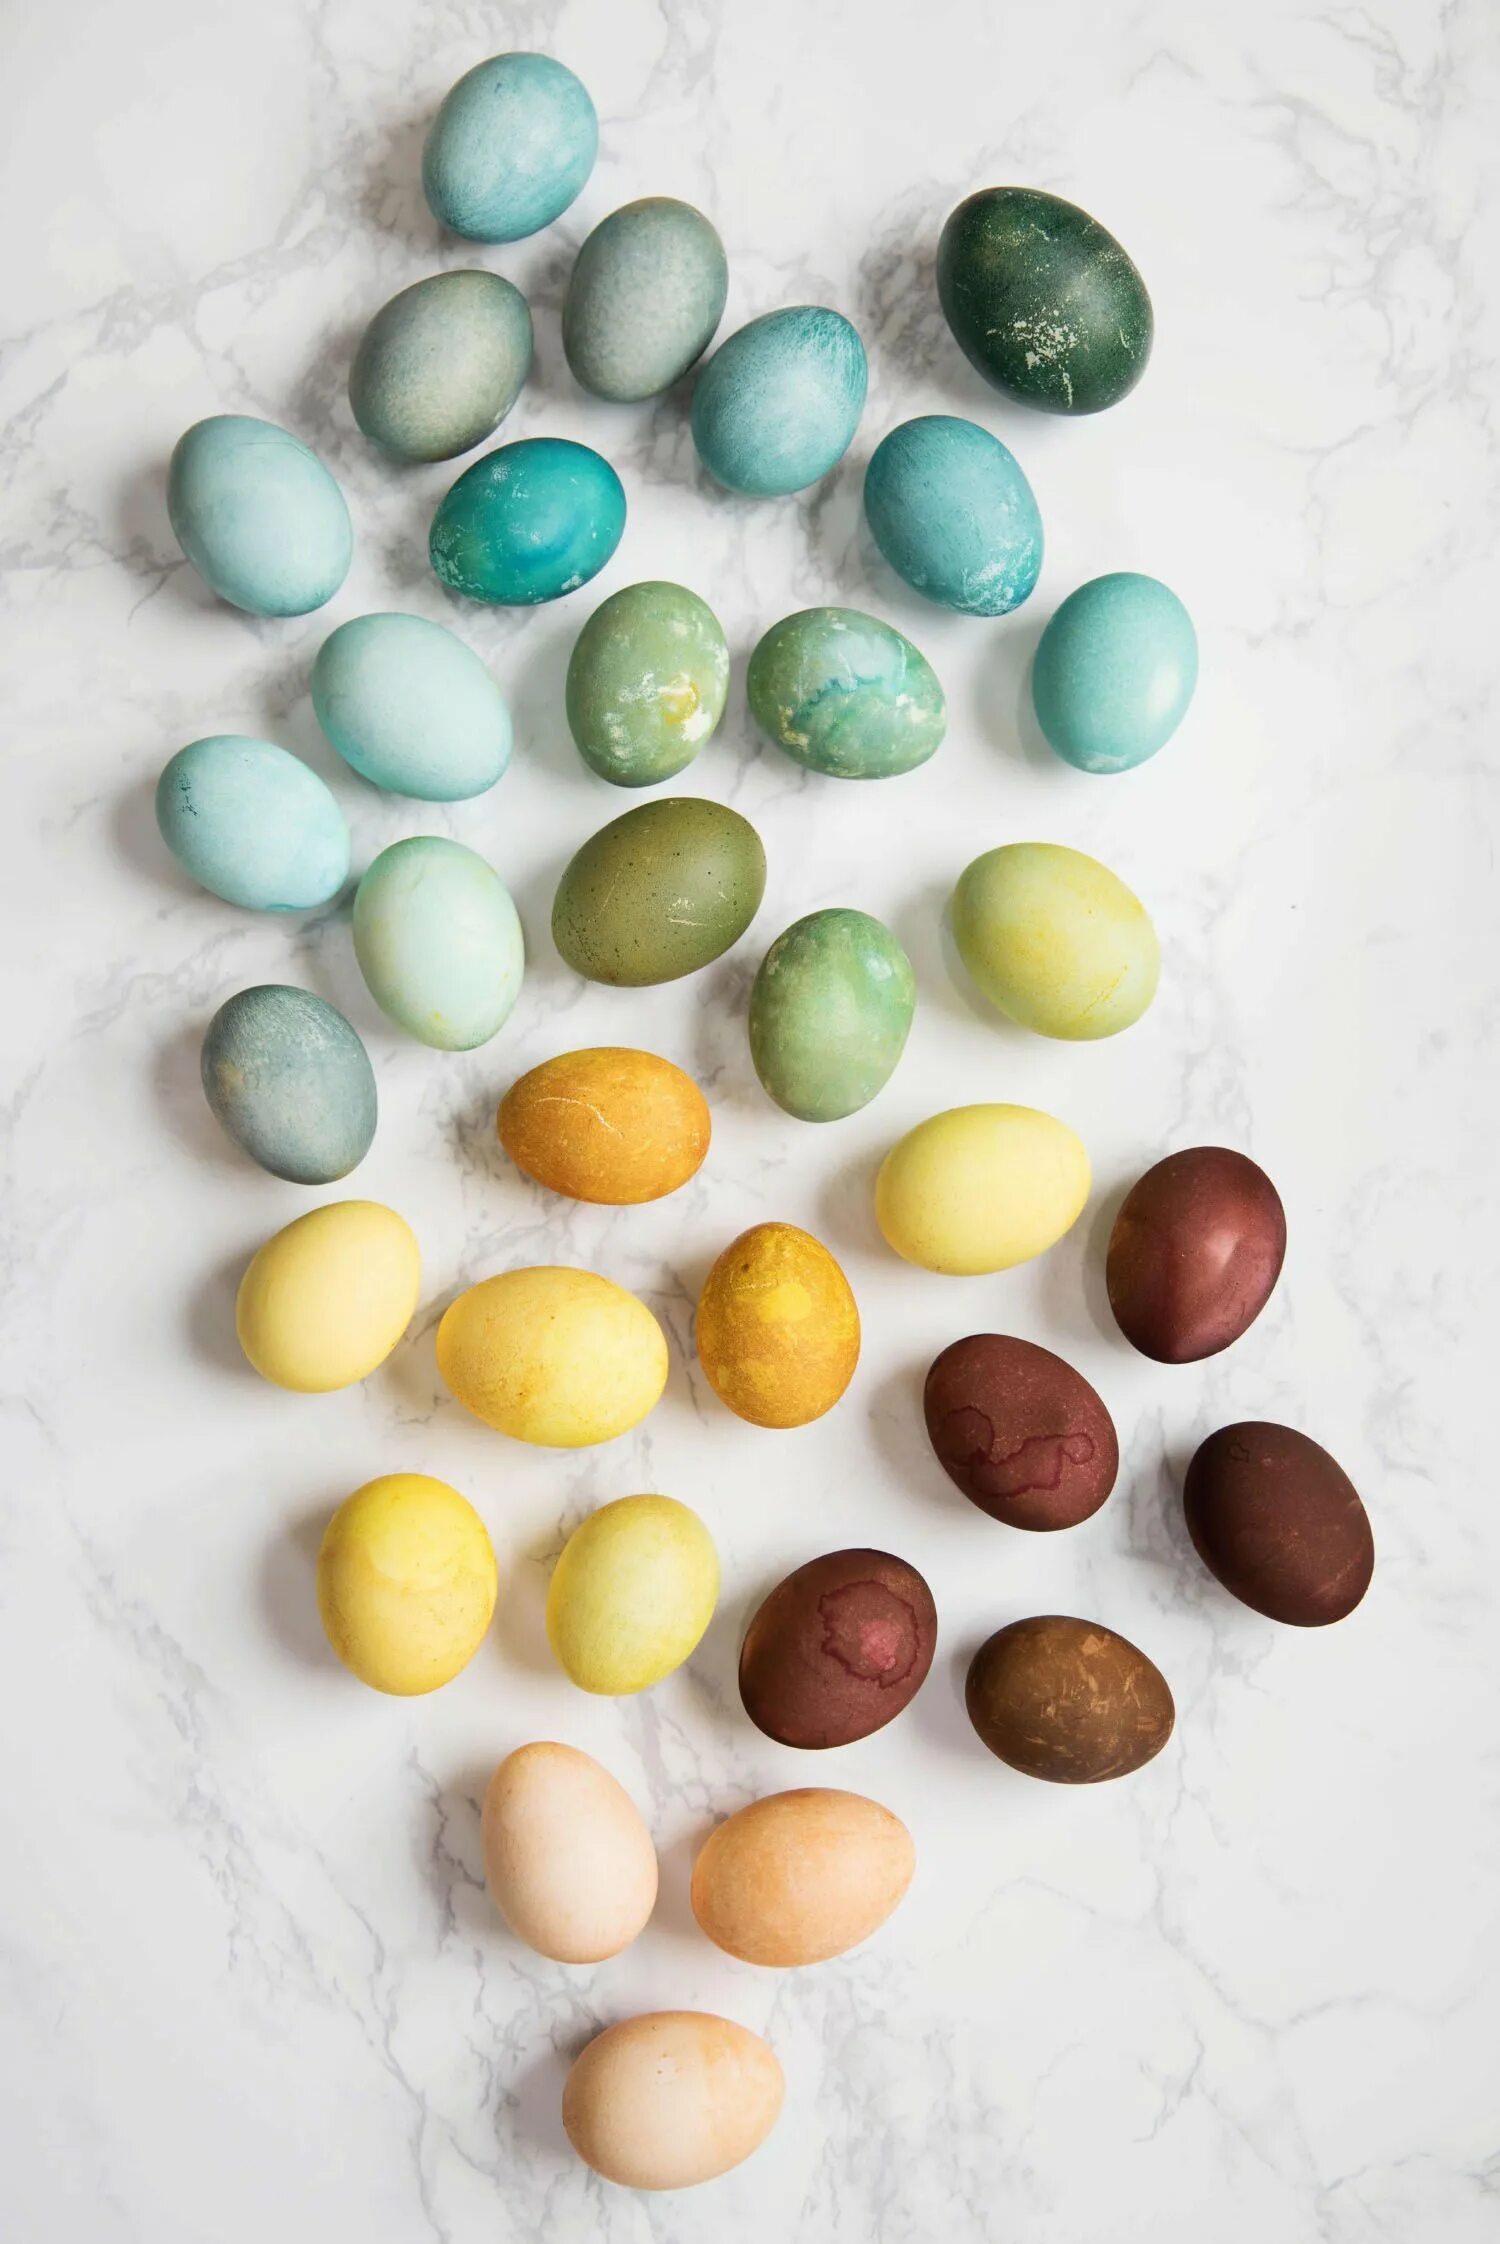 Натуральные красители для яиц. Украшение яиц натуральными красителями. Пасхальные яйца натуральные красители.